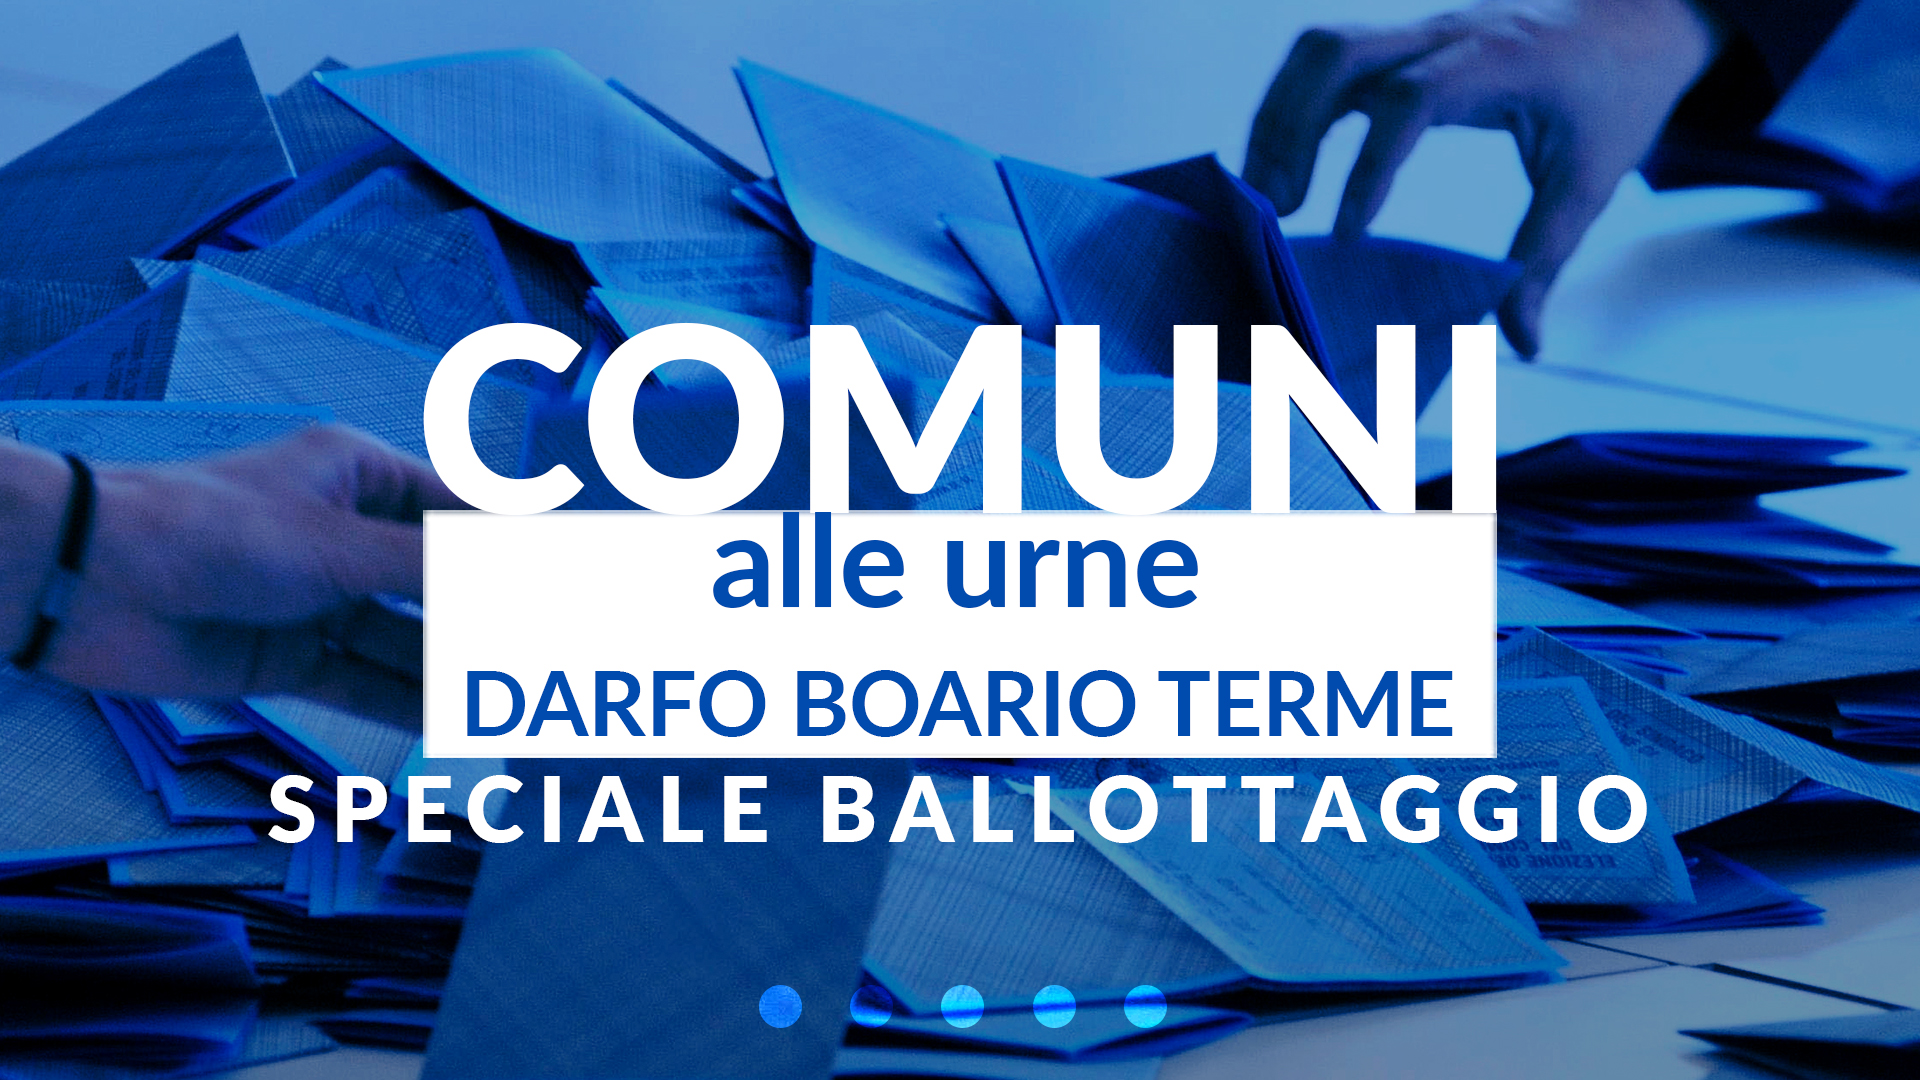 Comuni alle urne - Darfo Boario Terme - Speciale ballottaggio